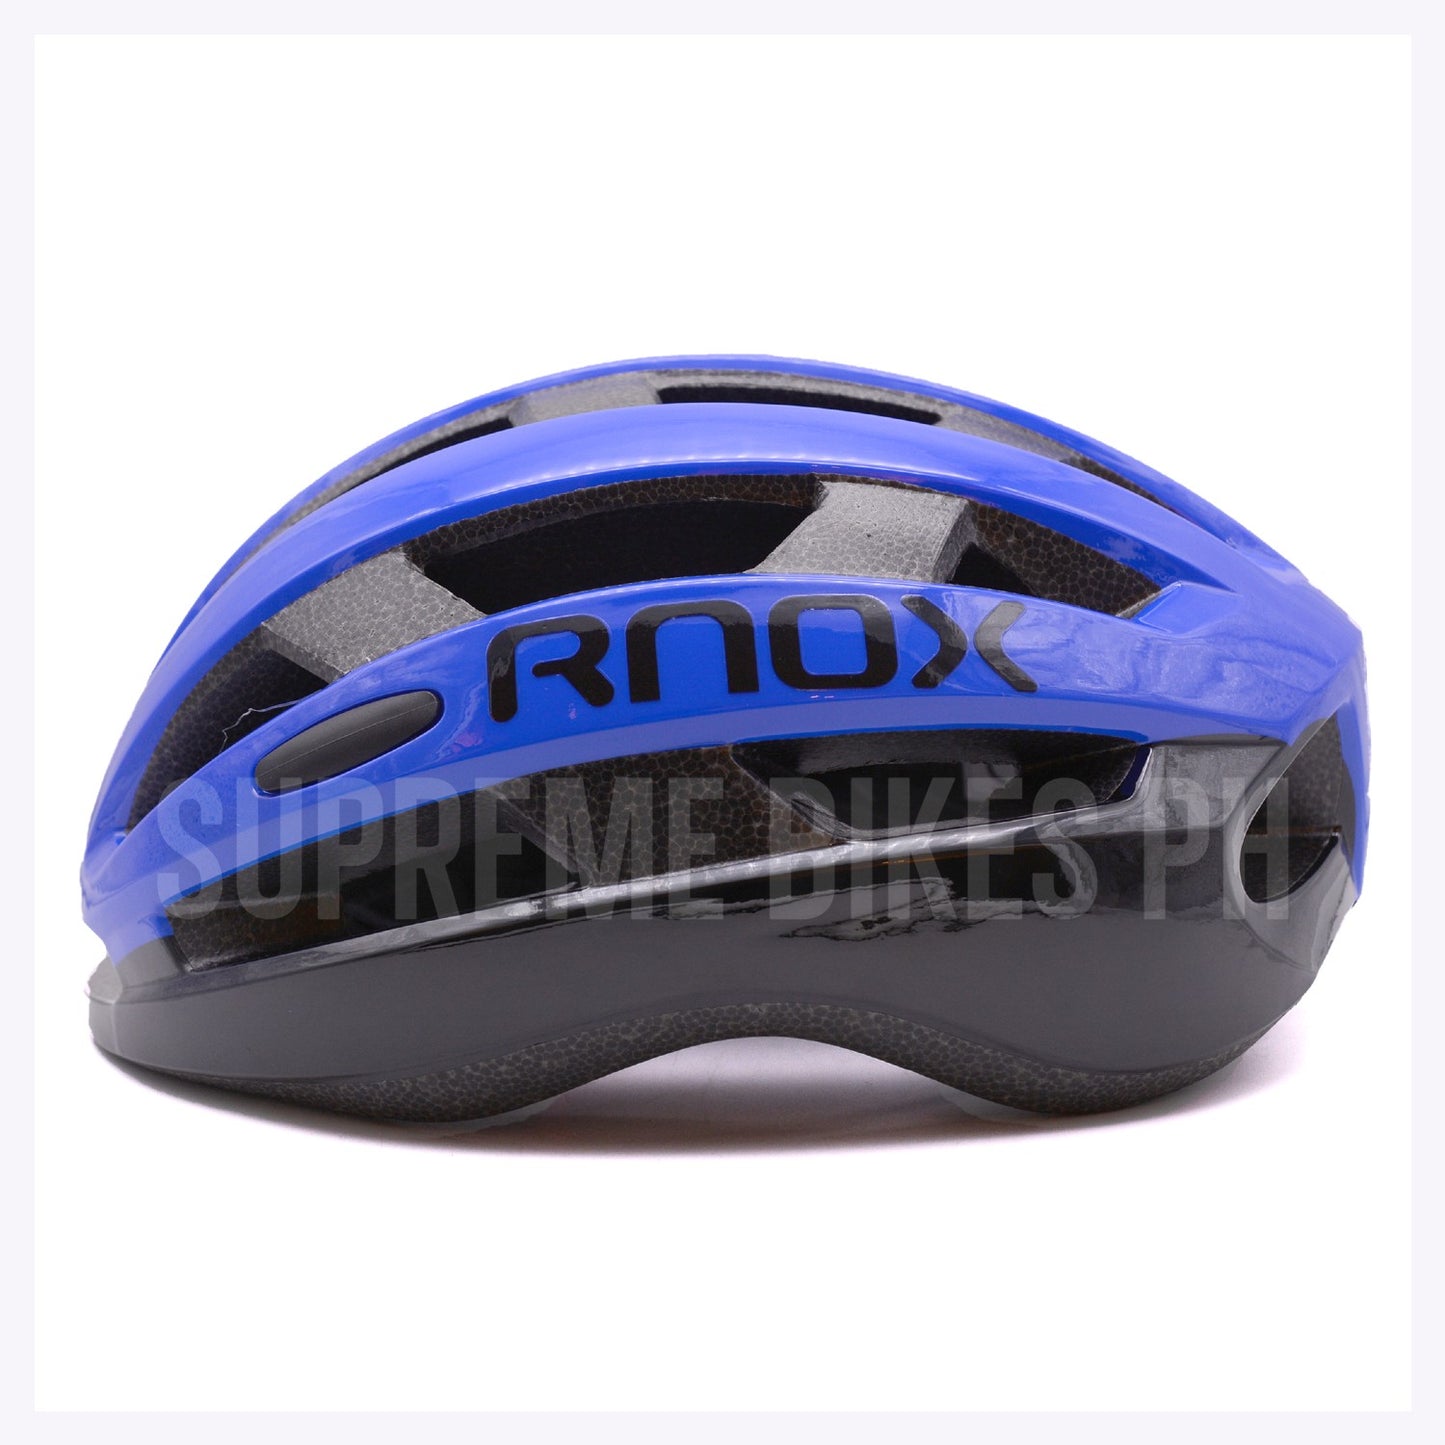 RNOX Bike Helmet Universal Size 53-61cm - Dark Blue